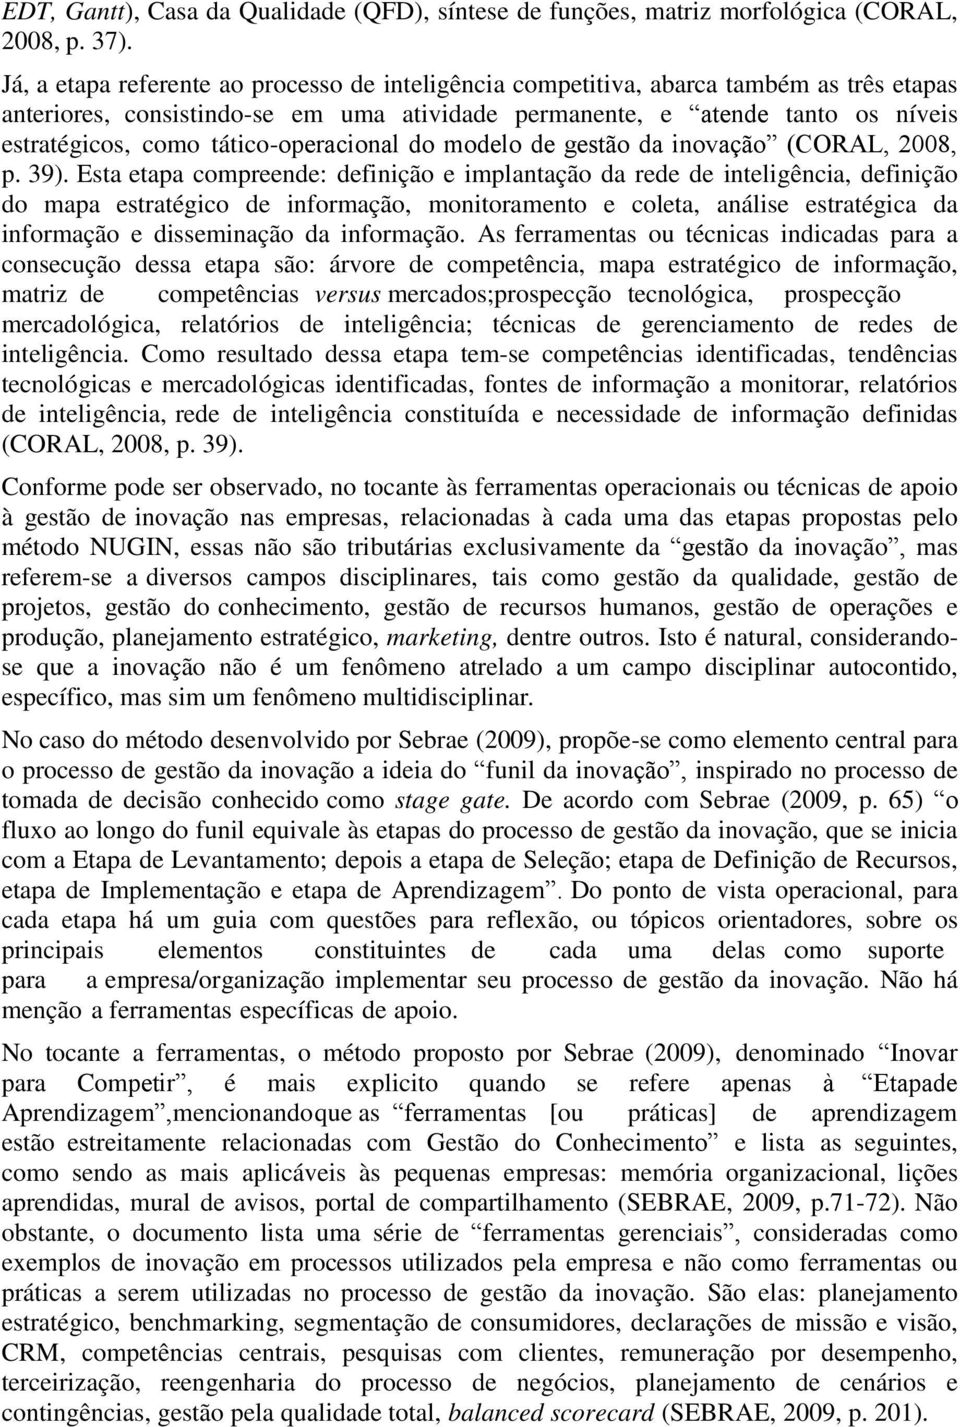 tático-operacional do modelo de gestão da inovação (CORAL, 2008, p. 39).